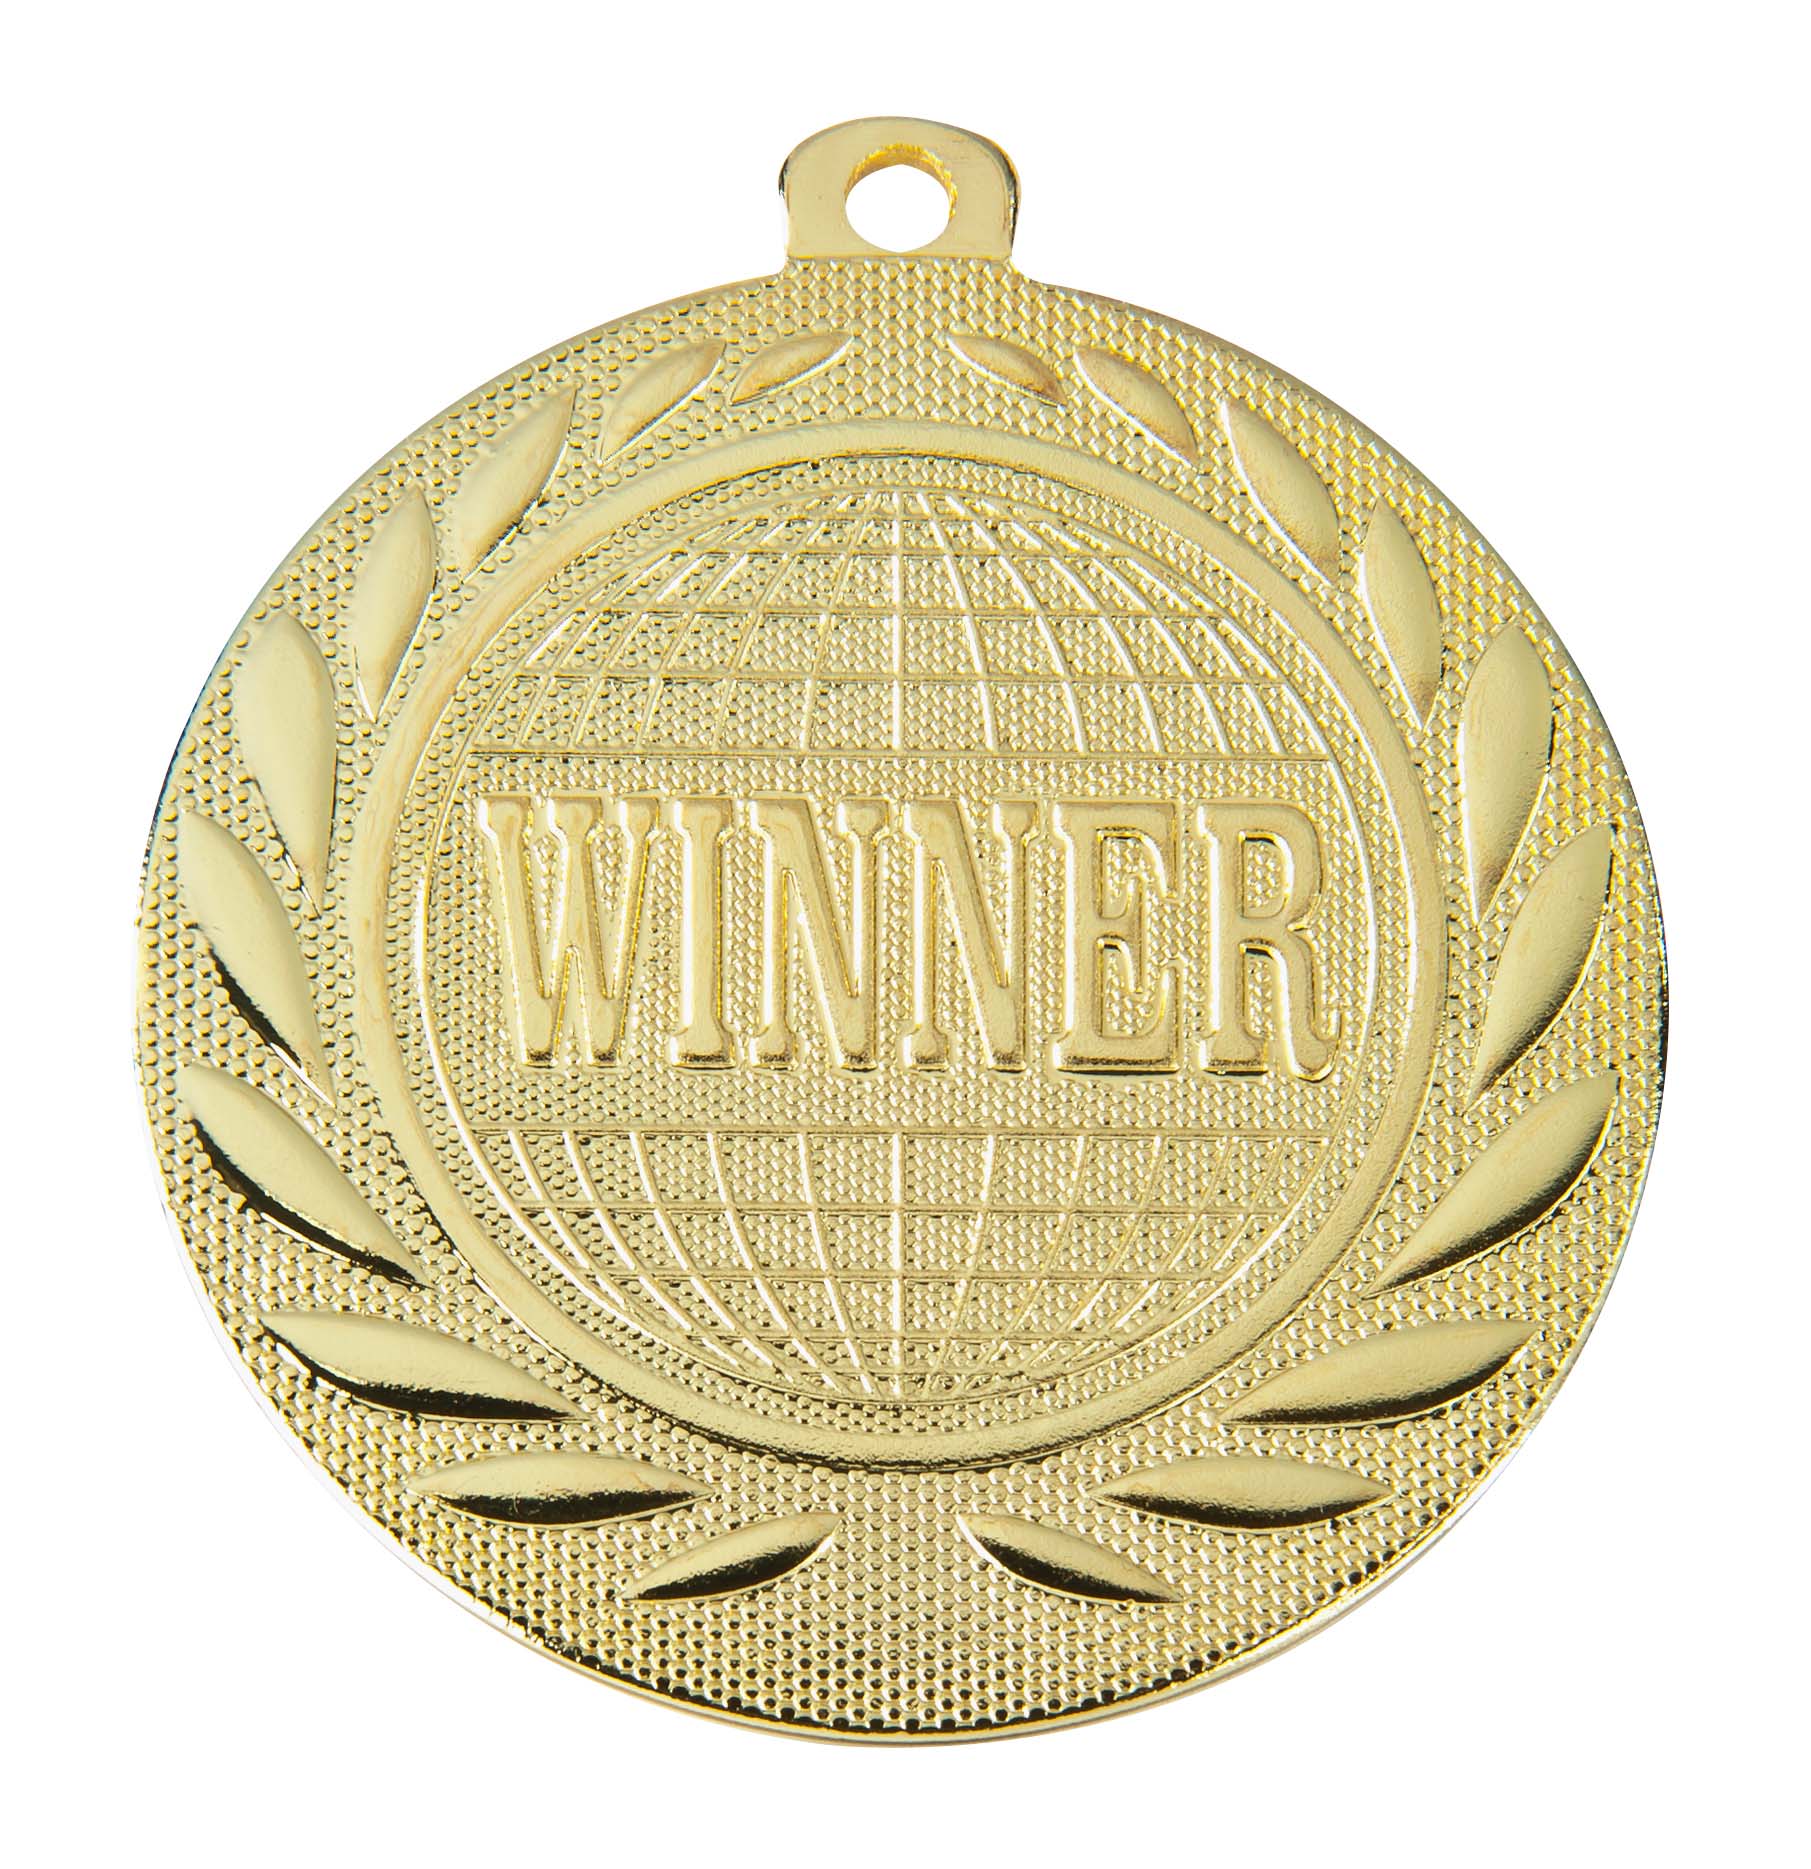 Winner-Medaille DI5000S inkl. Band und Beschriftung Gold Fertig montiert gegen Aufpreis